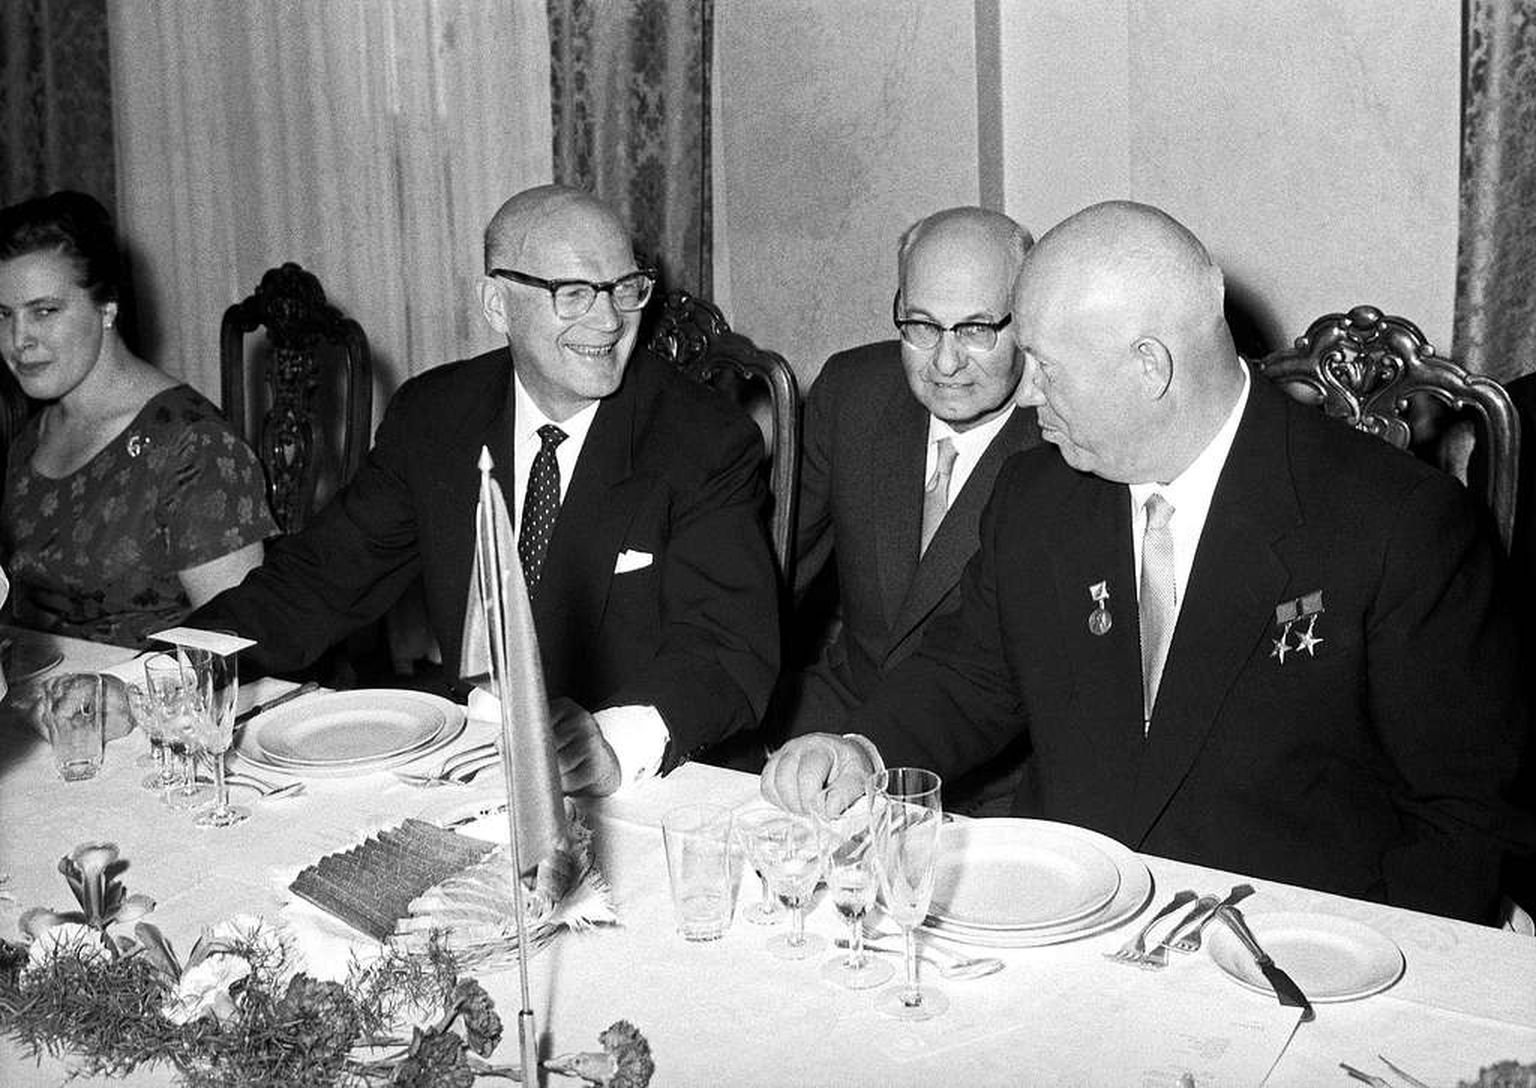 HEAD SÕBRAD: Pildil on soometumise poliitika üks autoritest ja täideviijaist, Soome president aastatel 1956–1982 Urho Kaleva Kekkonen (vasakul) ja NL-i liider aastatel 1953–1964 Nikita Hruštšov (paremal). Nende vahel istub tõlk Kustaa Loikkanen. Pilt on tehtud 1960. aastal, kui Soome riigipea tähistas oma 60. sünnipäeva.